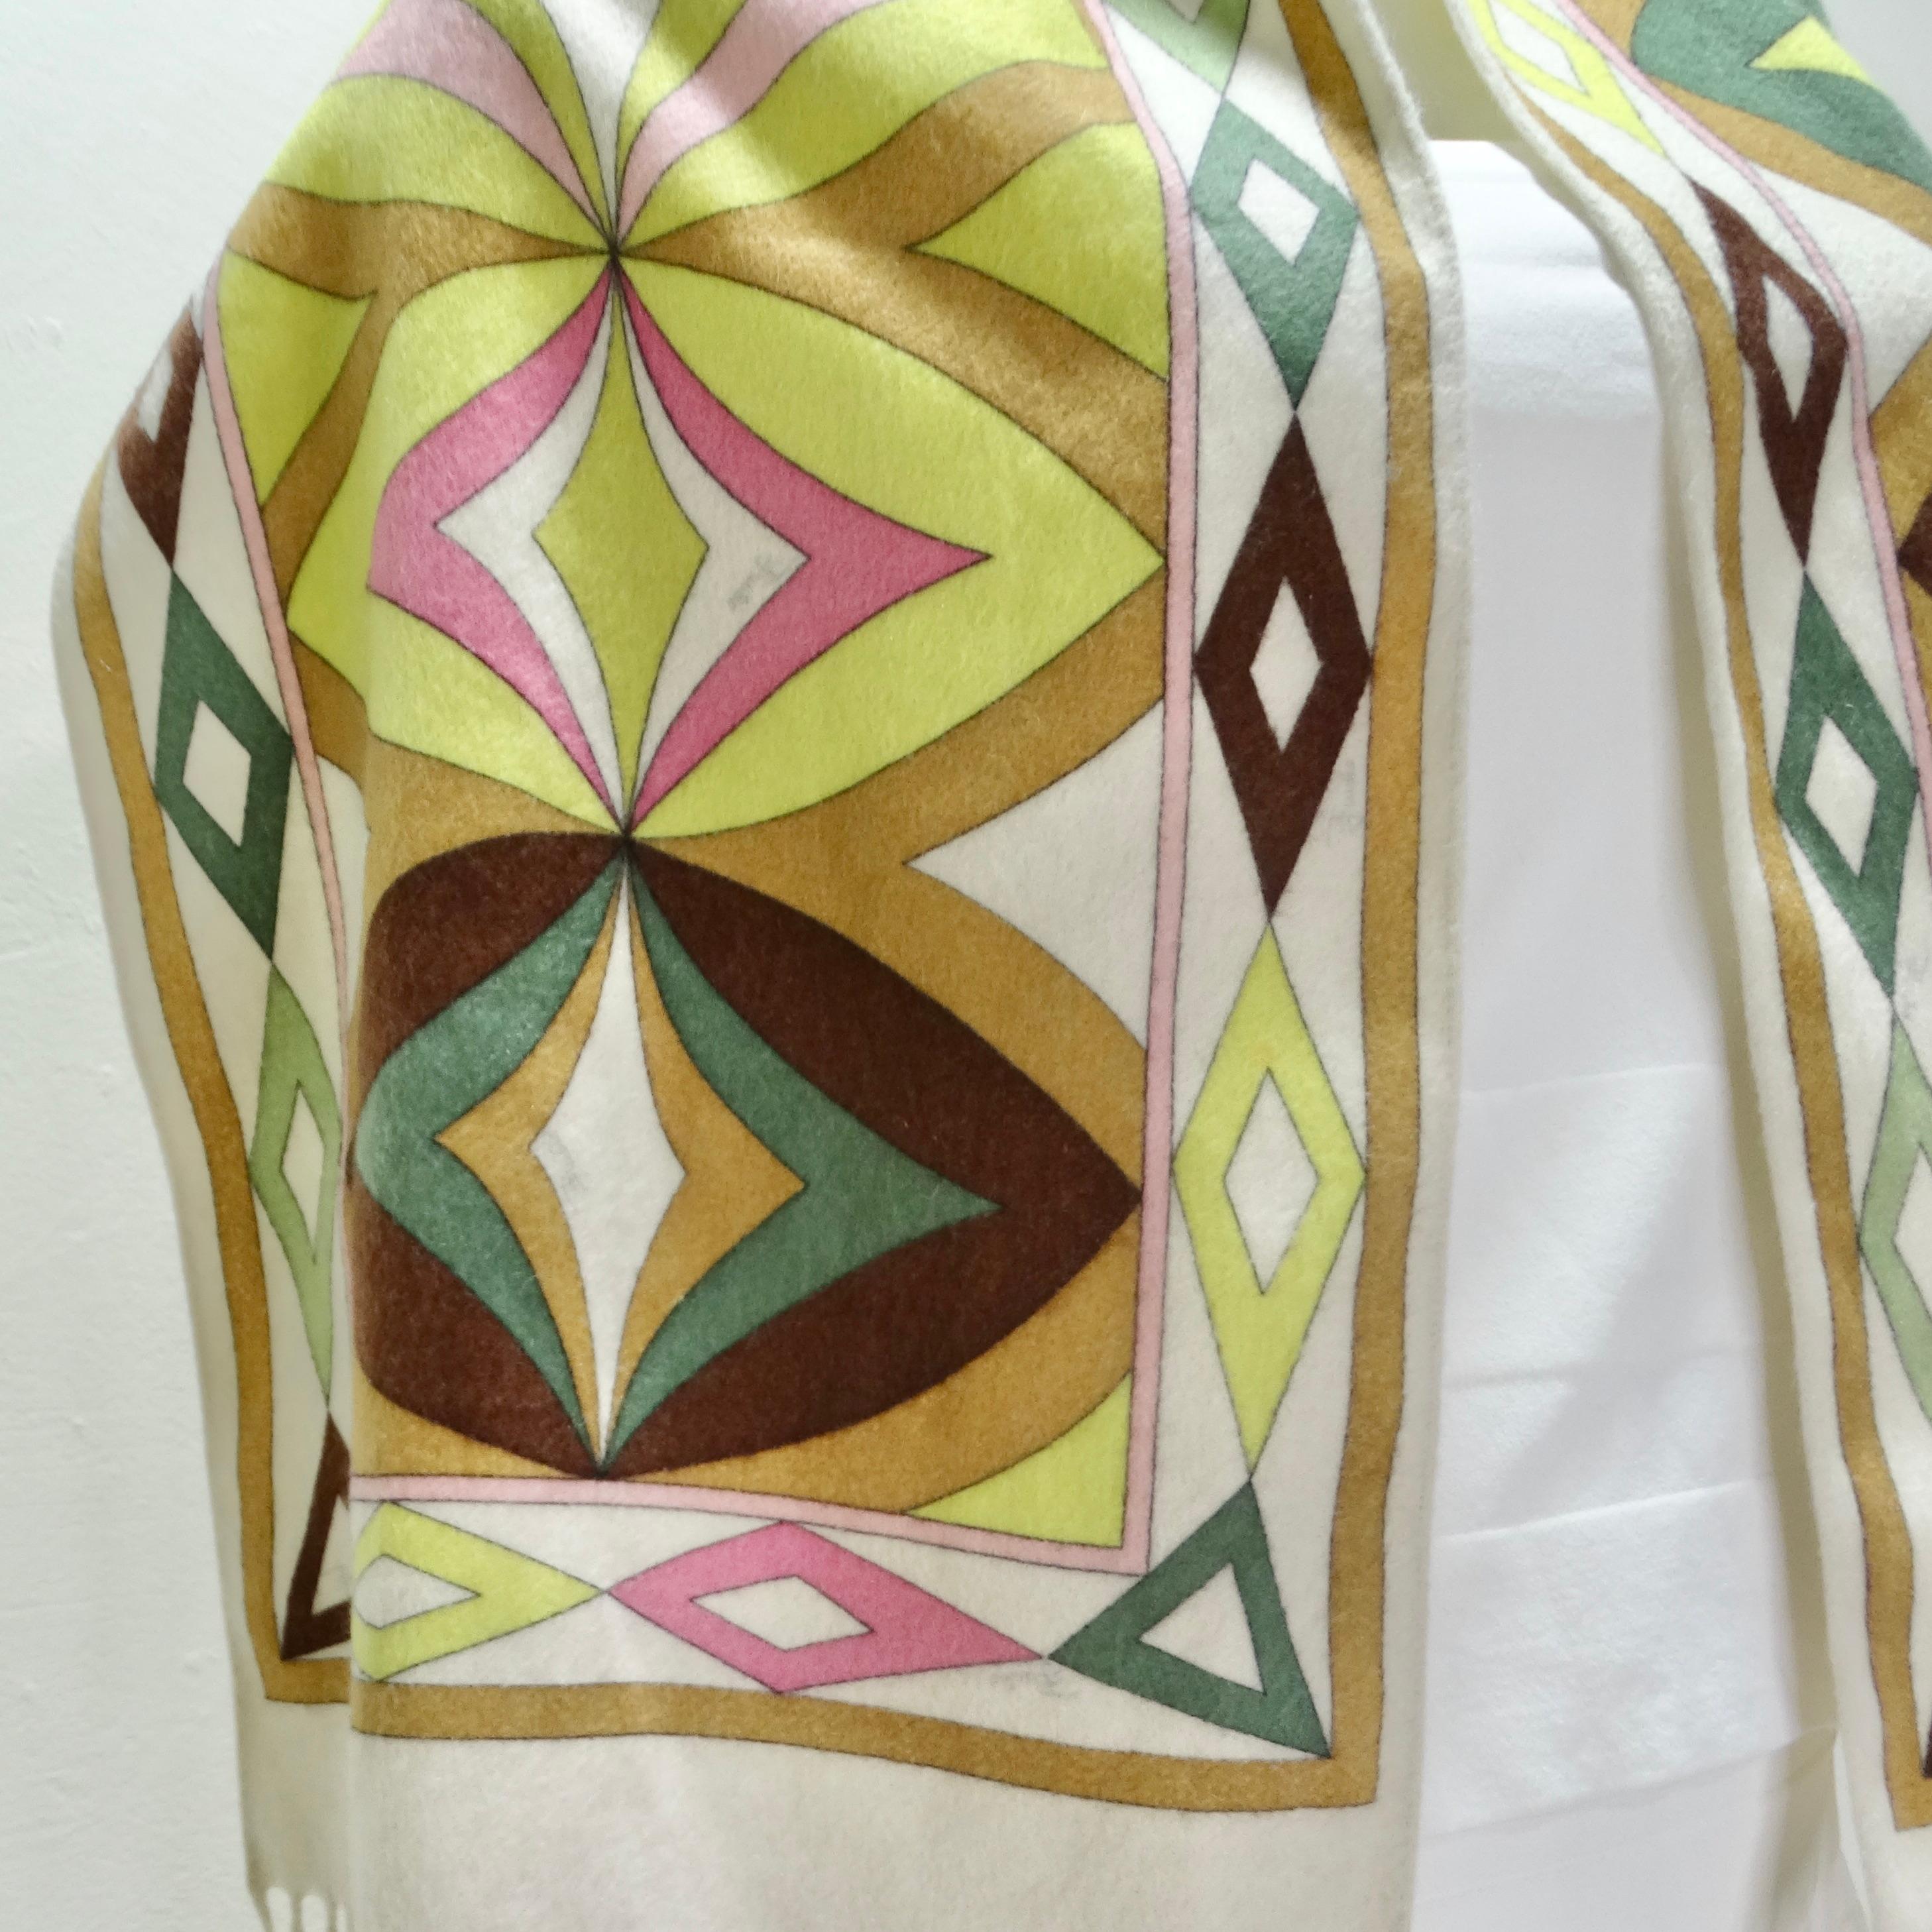 L'écharpe en cachemire Emilio Pucci des années 1980 n'est pas seulement un accessoire, c'est aussi une œuvre d'art. Cette luxueuse écharpe en cachemire présente une base blanche ornée d'un imprimé abstrait signé Pucci dans des verts, des roses et